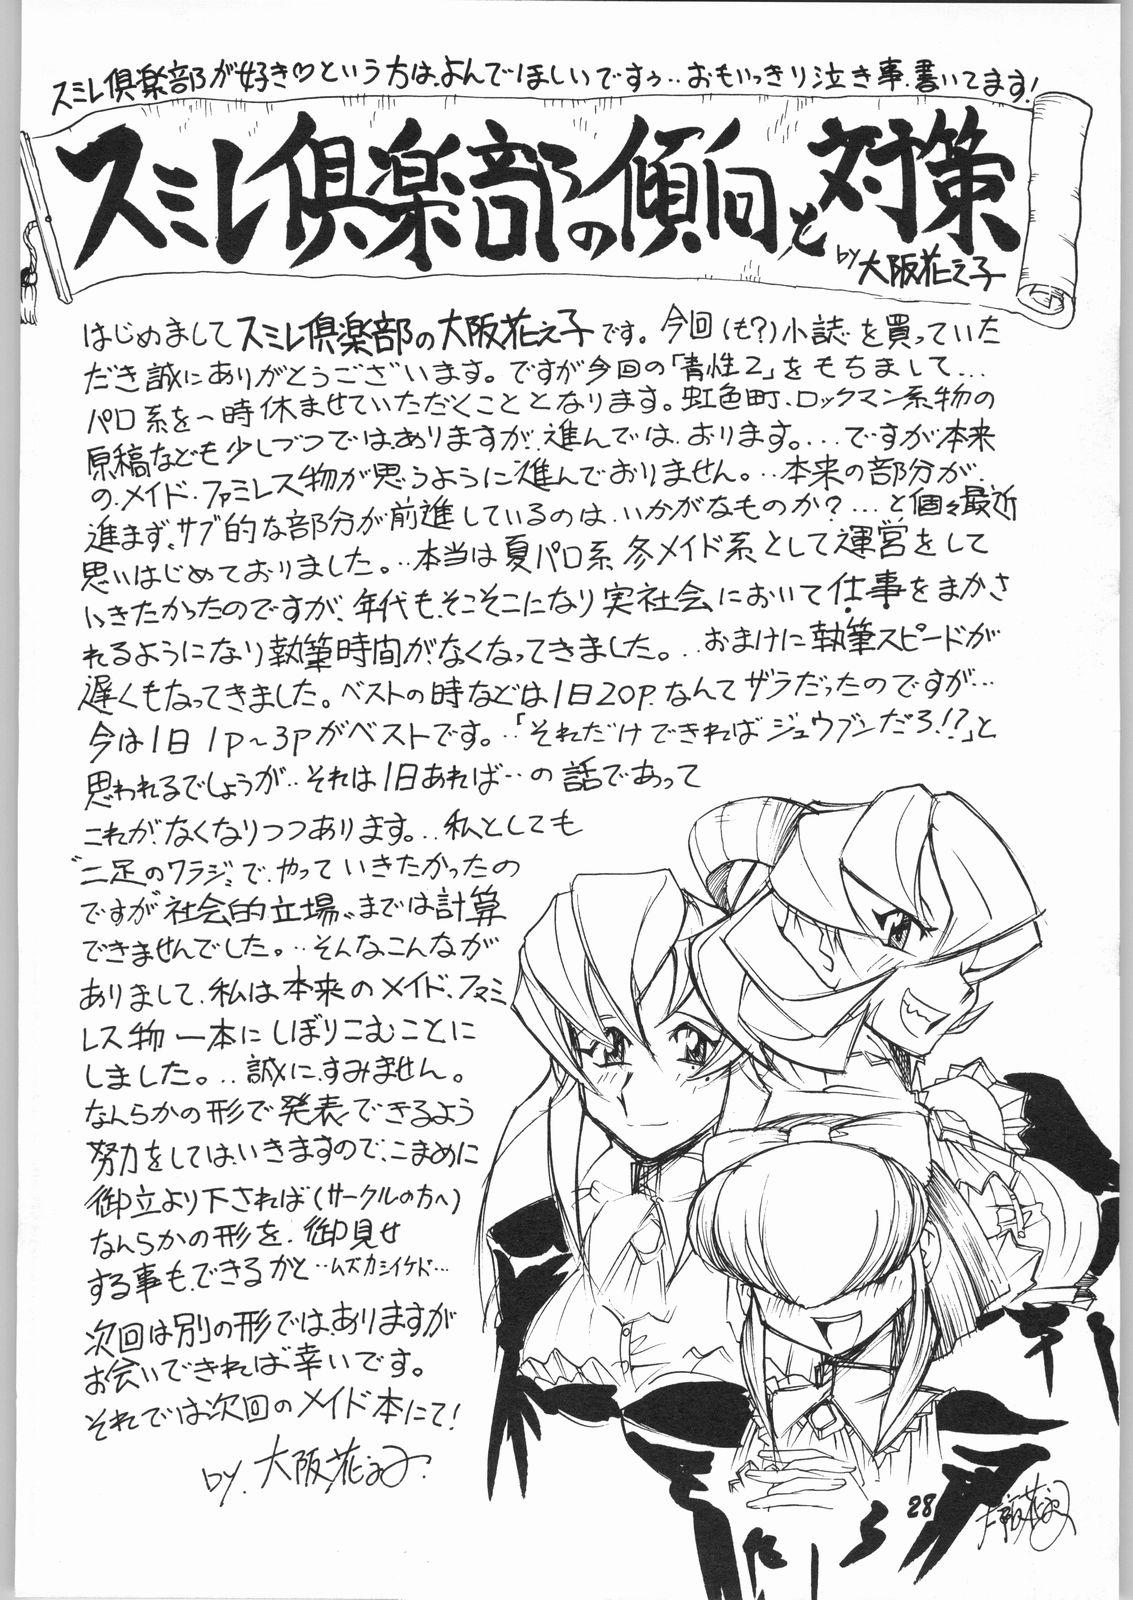 Cornudo natsu eno tobira - True love story Mask - Page 27